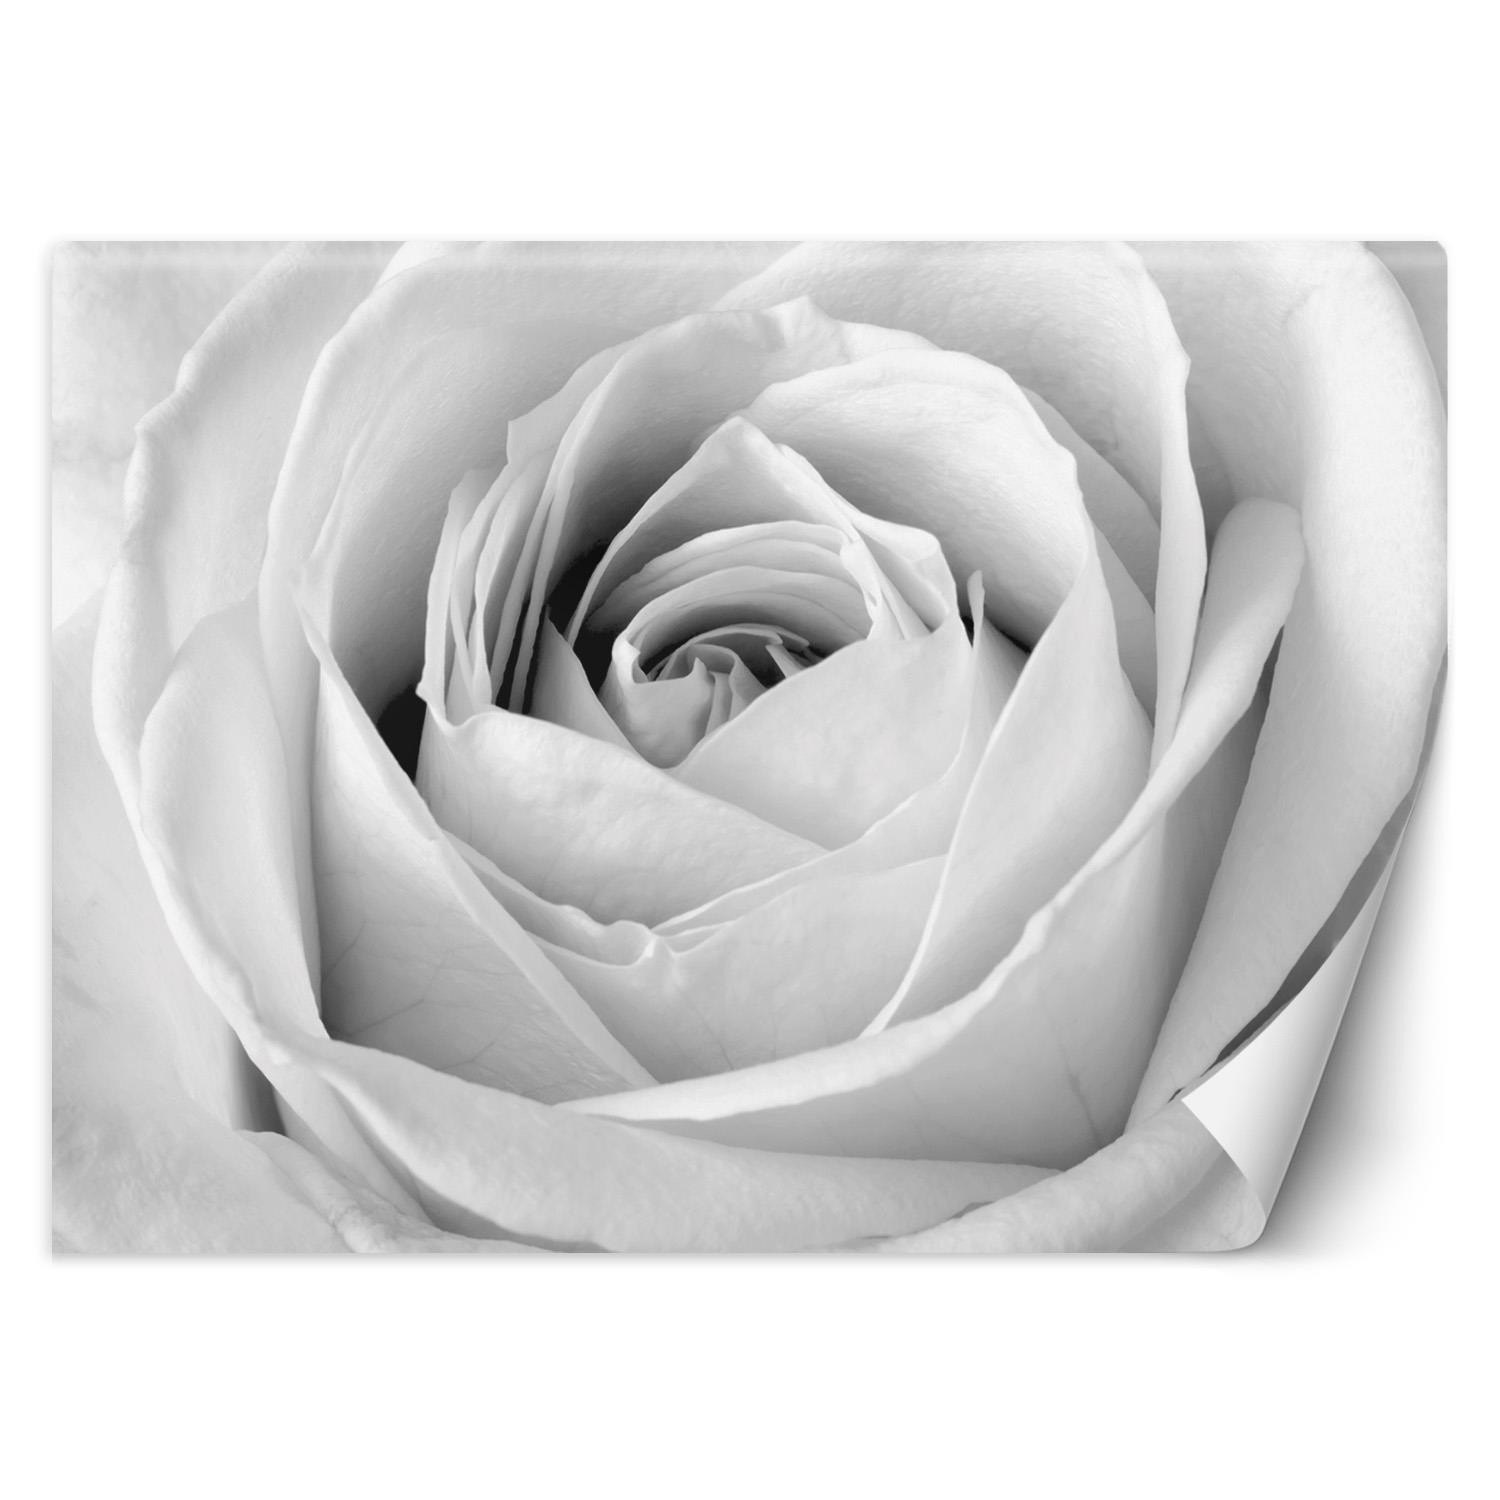 Trend24 – Behang – Witte Roos – Behangpapier – Fotobehang Bloemen – Behang Woonkamer – 400x280x2 cm – Incl. behanglijm